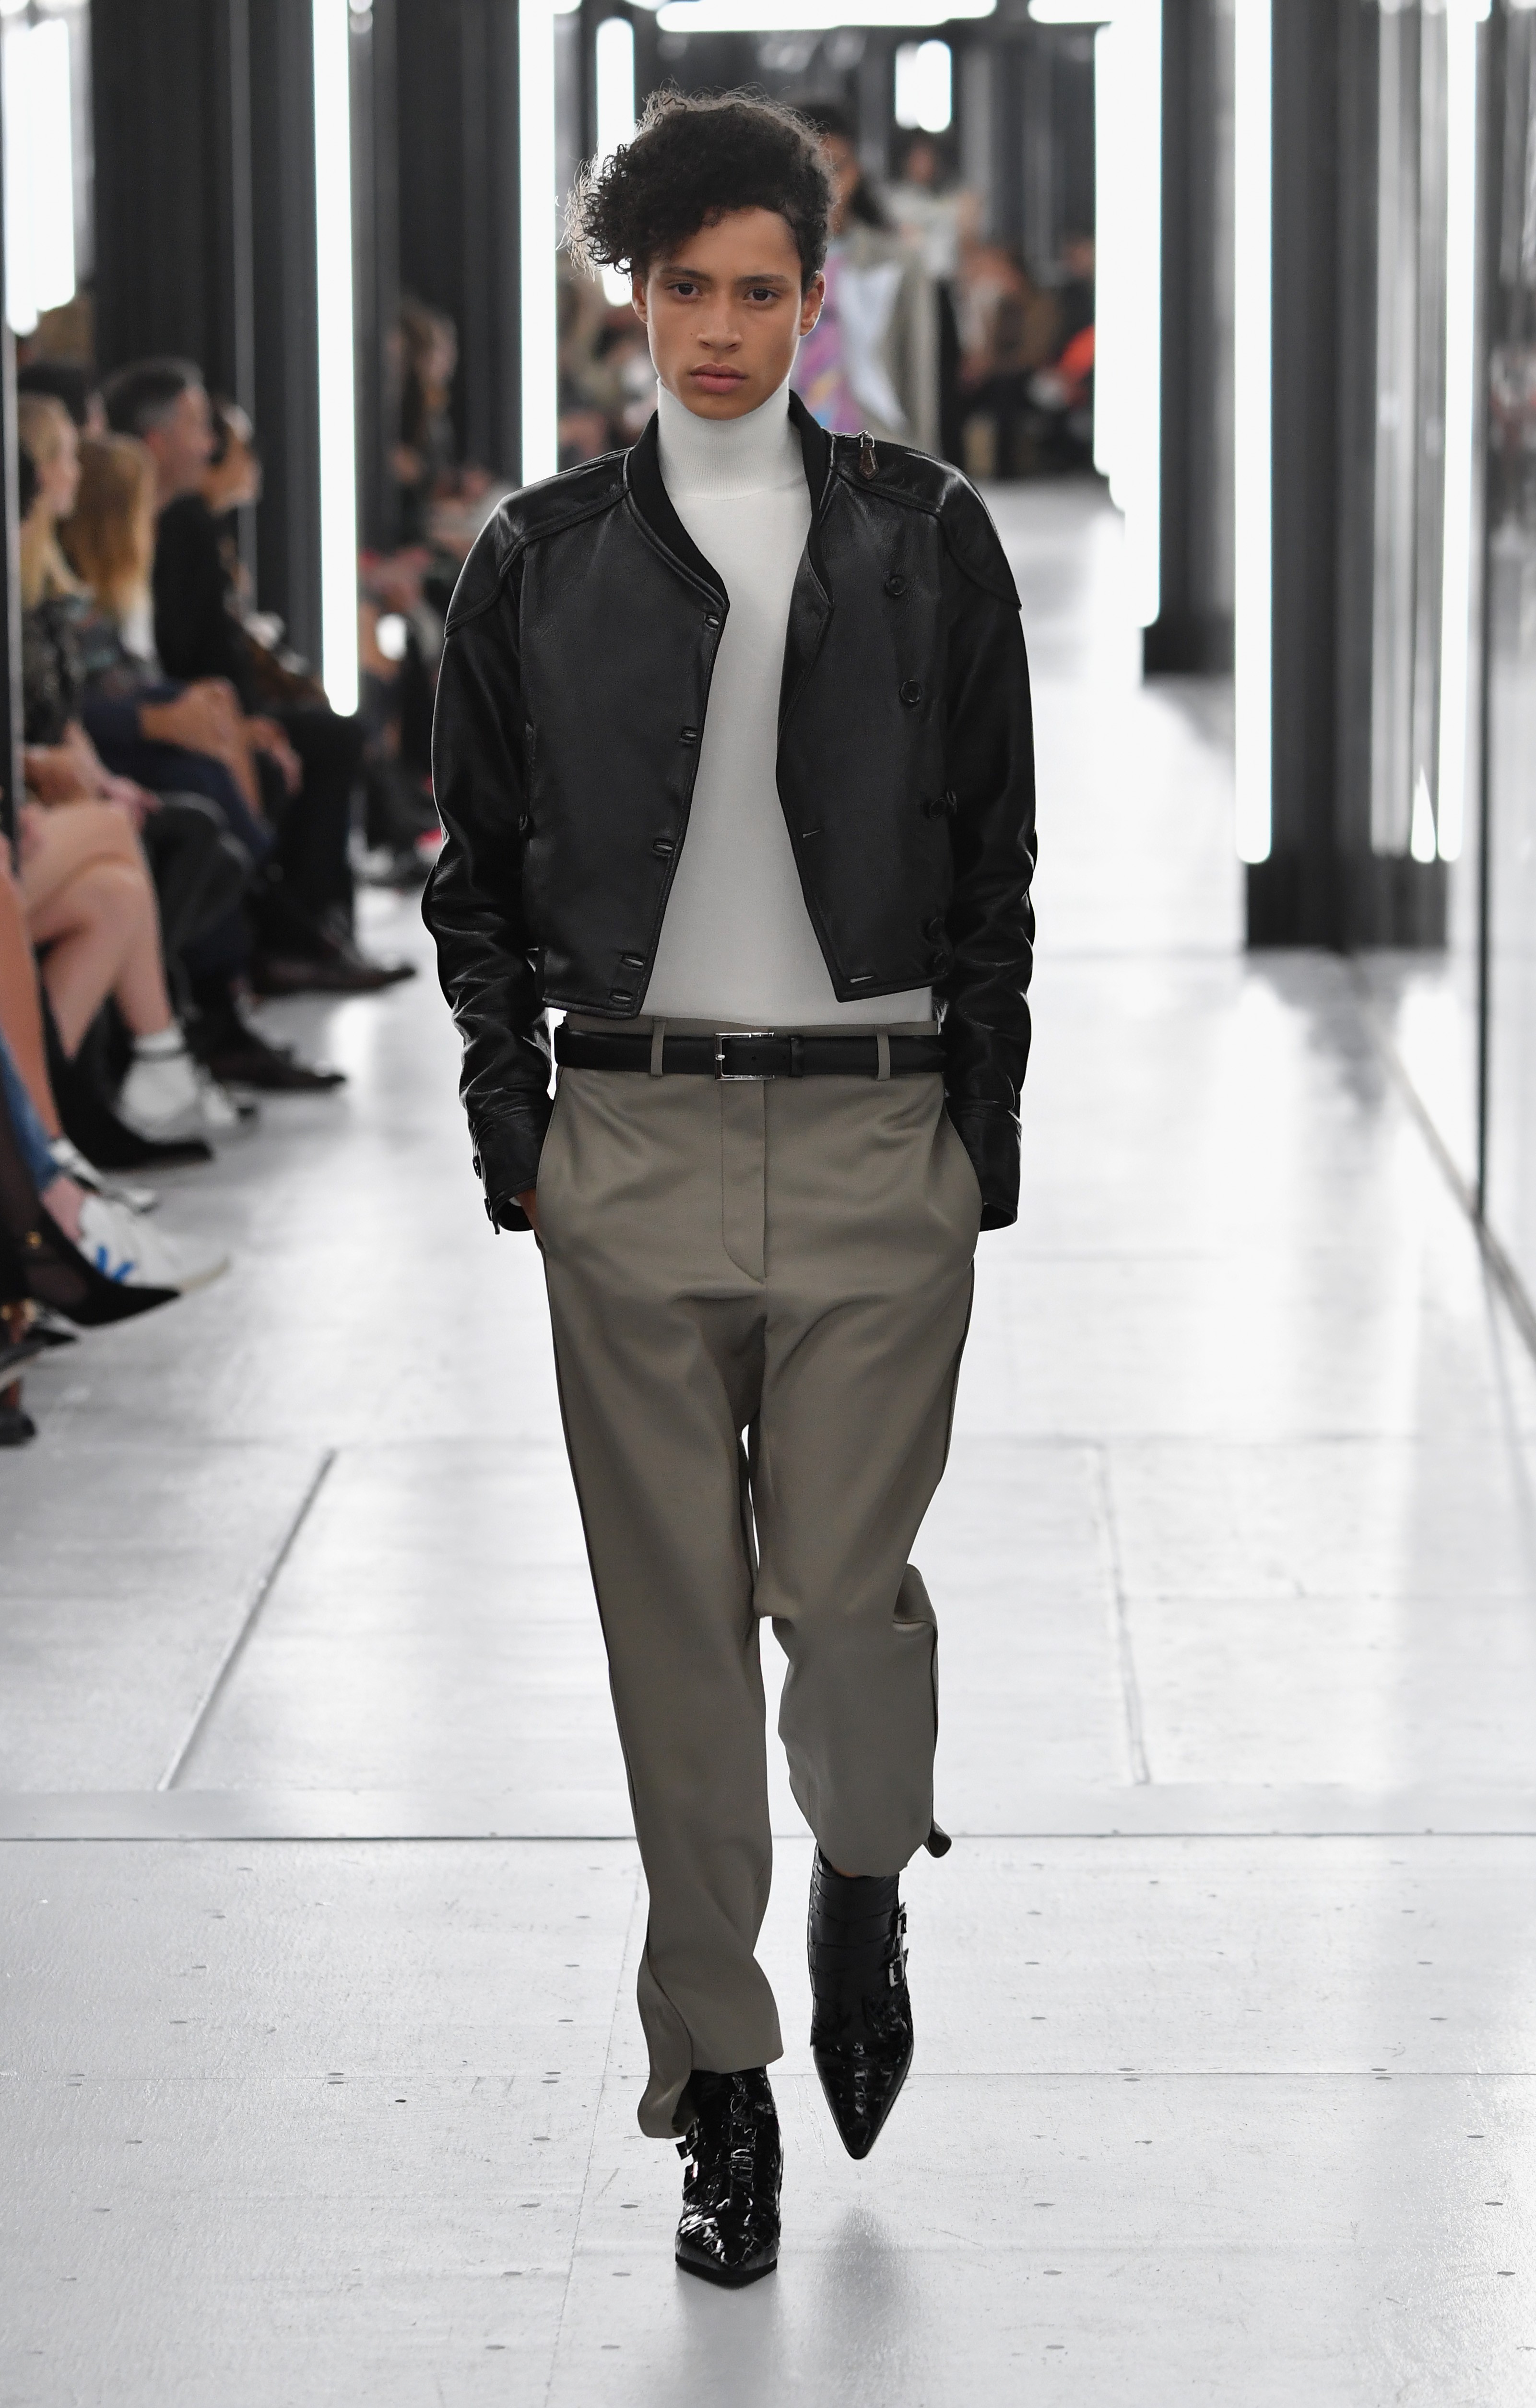 Louis Vuitton aposta em roupas sem gênero (Foto: Getty Images)